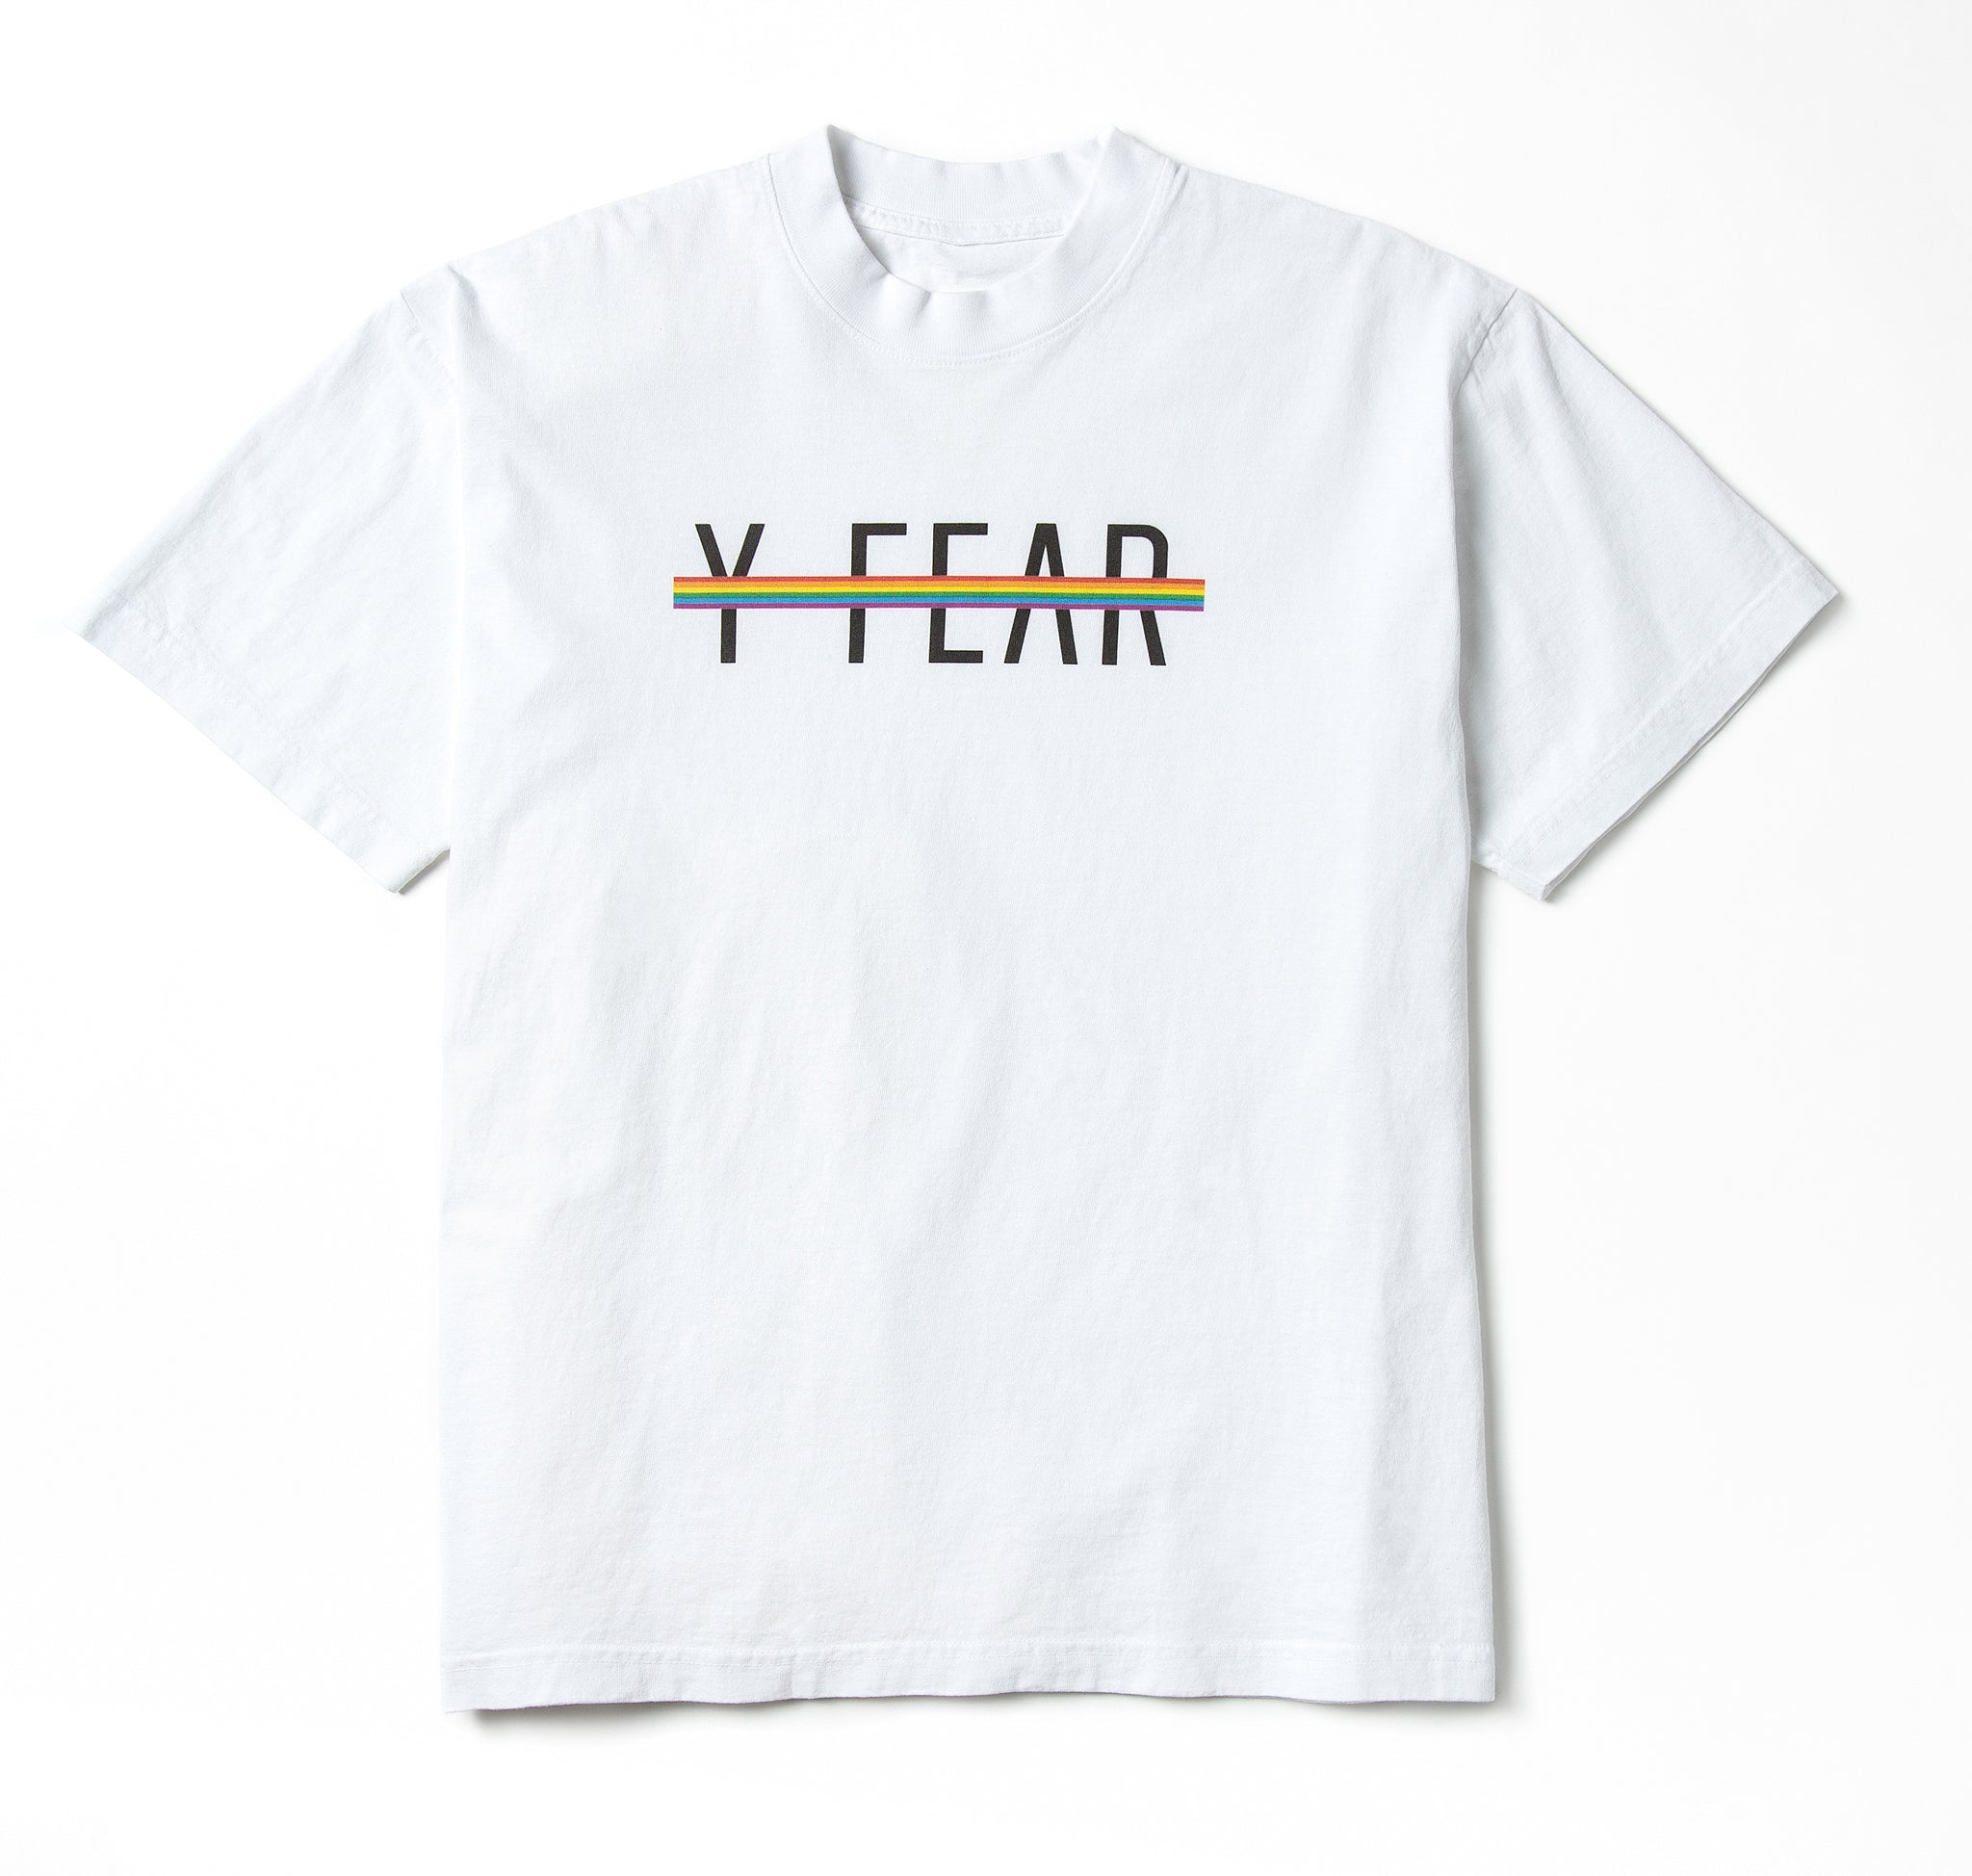 Y-FEAR Pride Tee